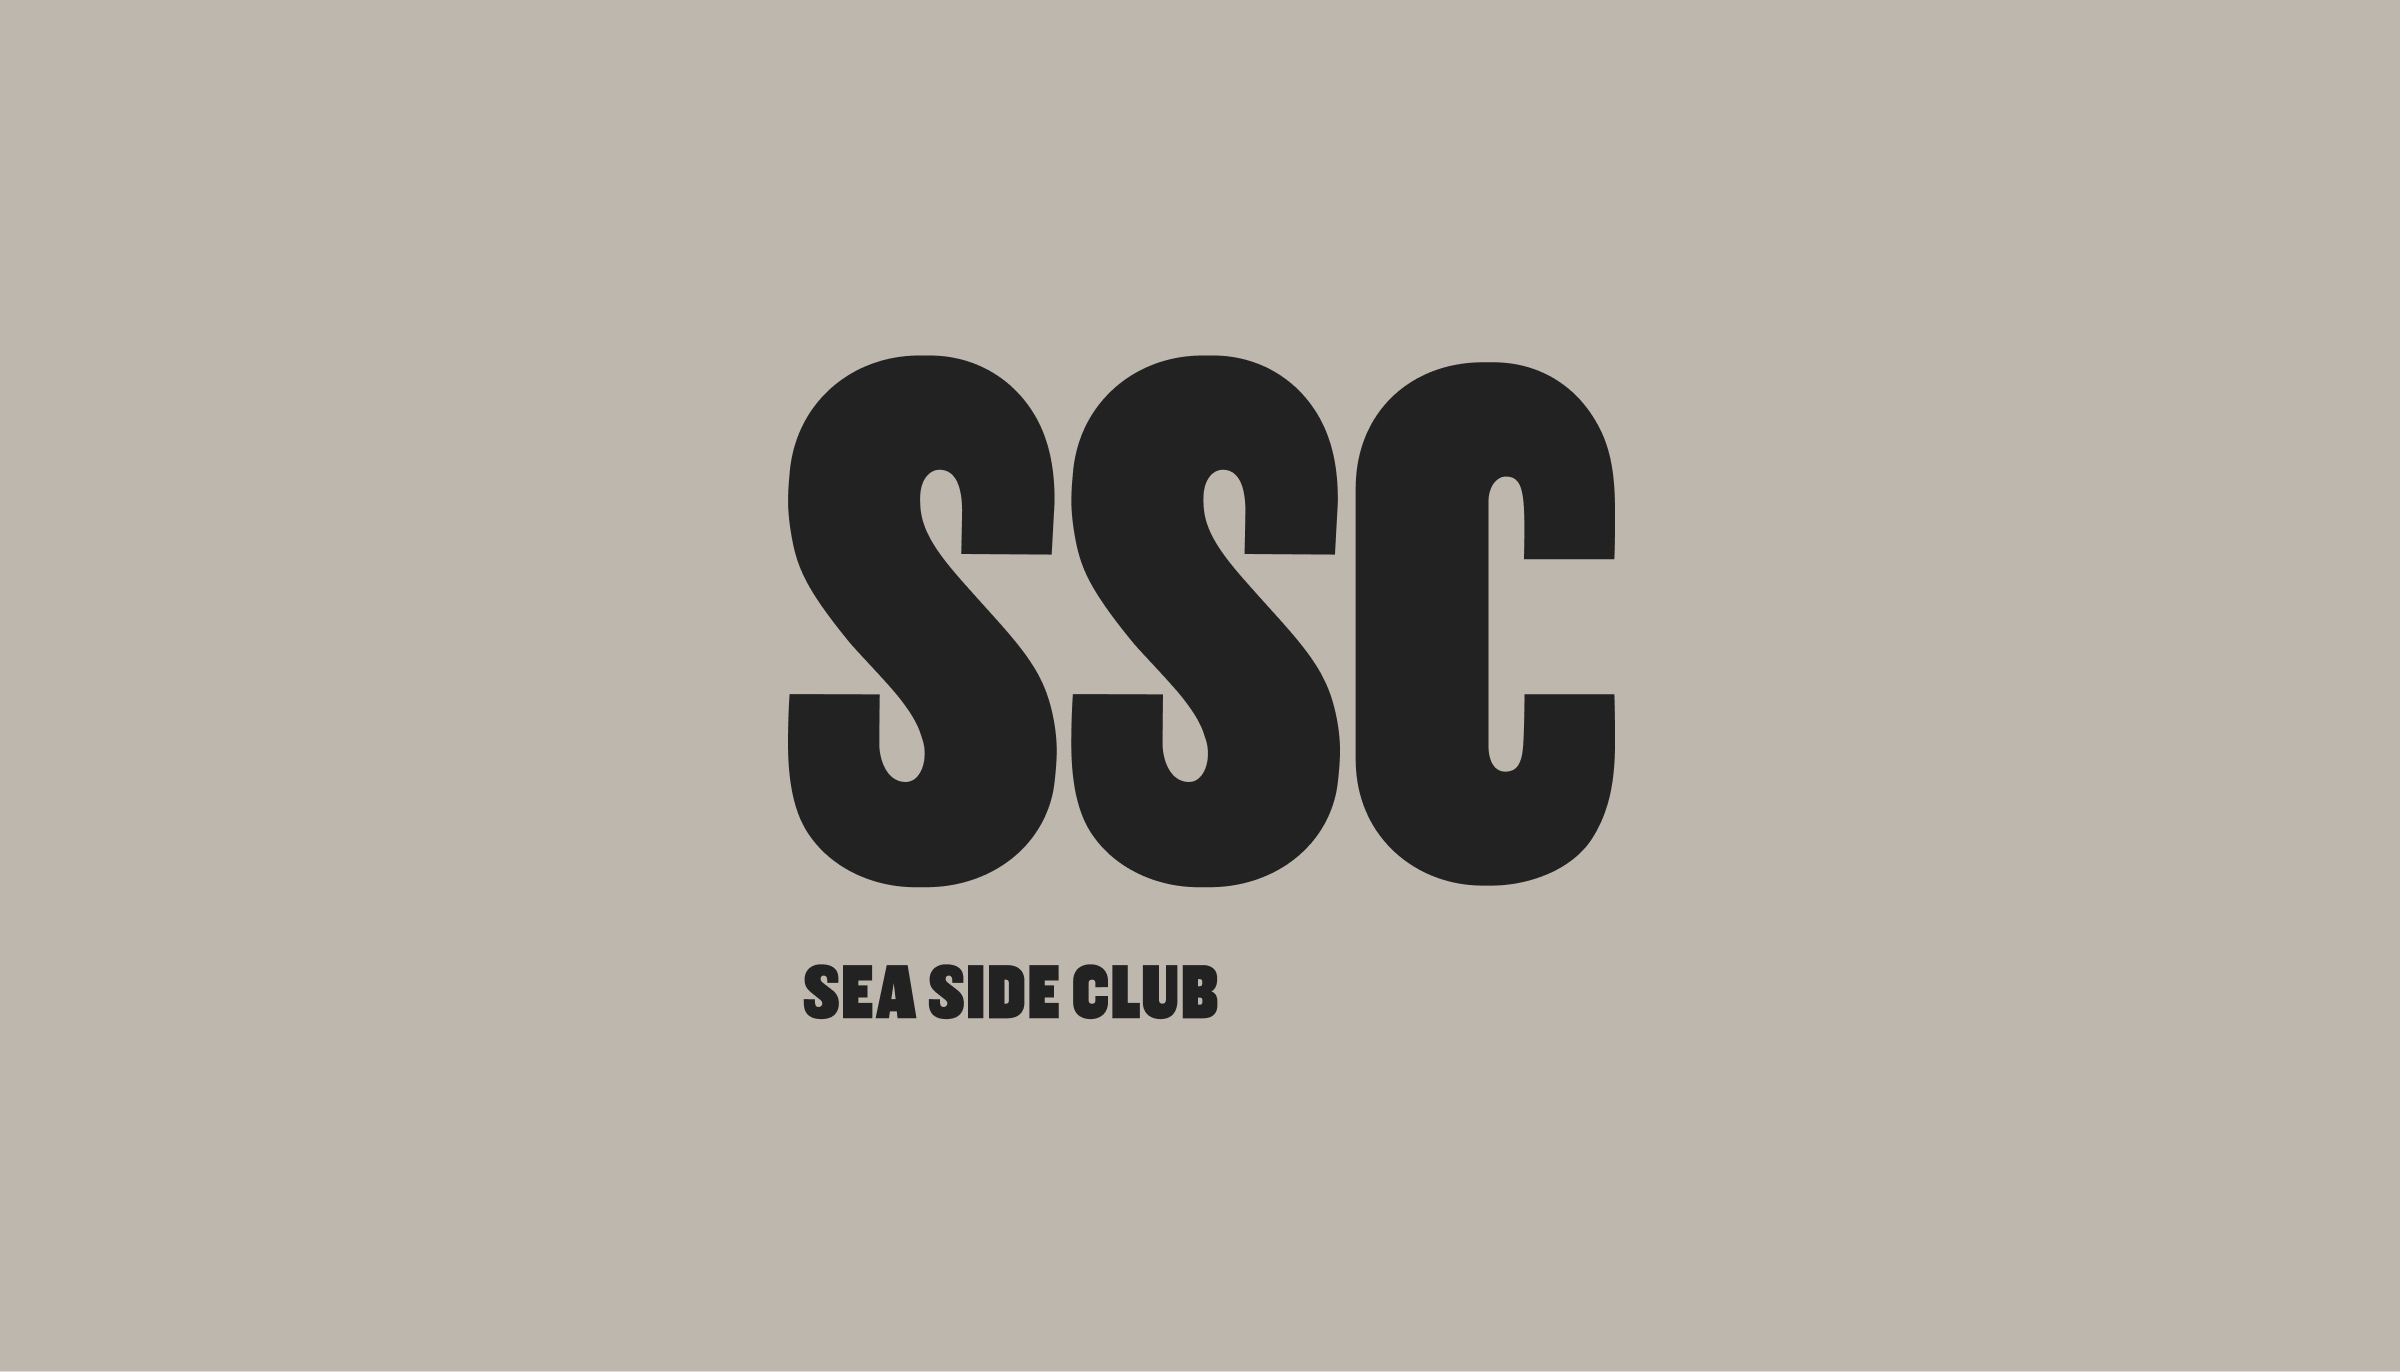 SSC - SEA SIDE CLUB のロゴ